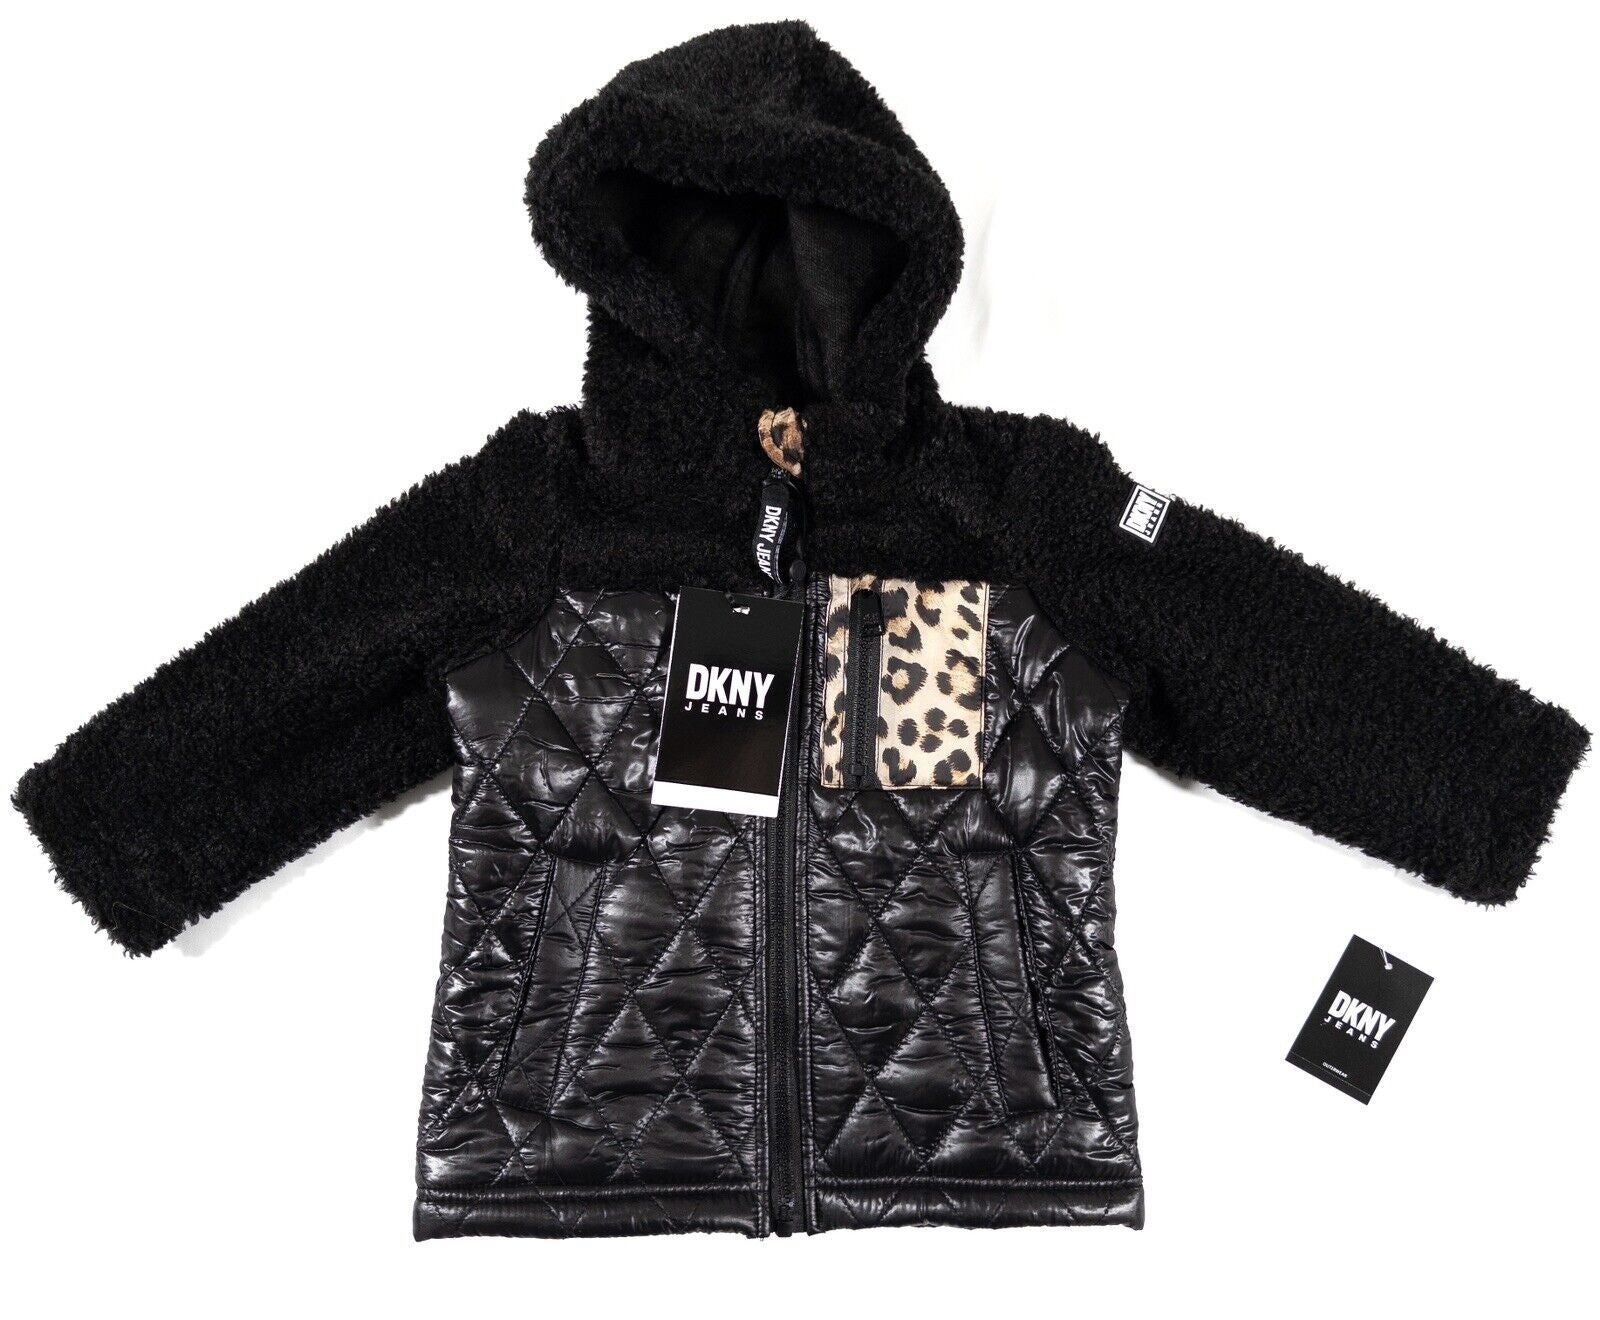 DKNY JEANS Infant Girls Black Coat Jacket Hooded Size UK 2 Years